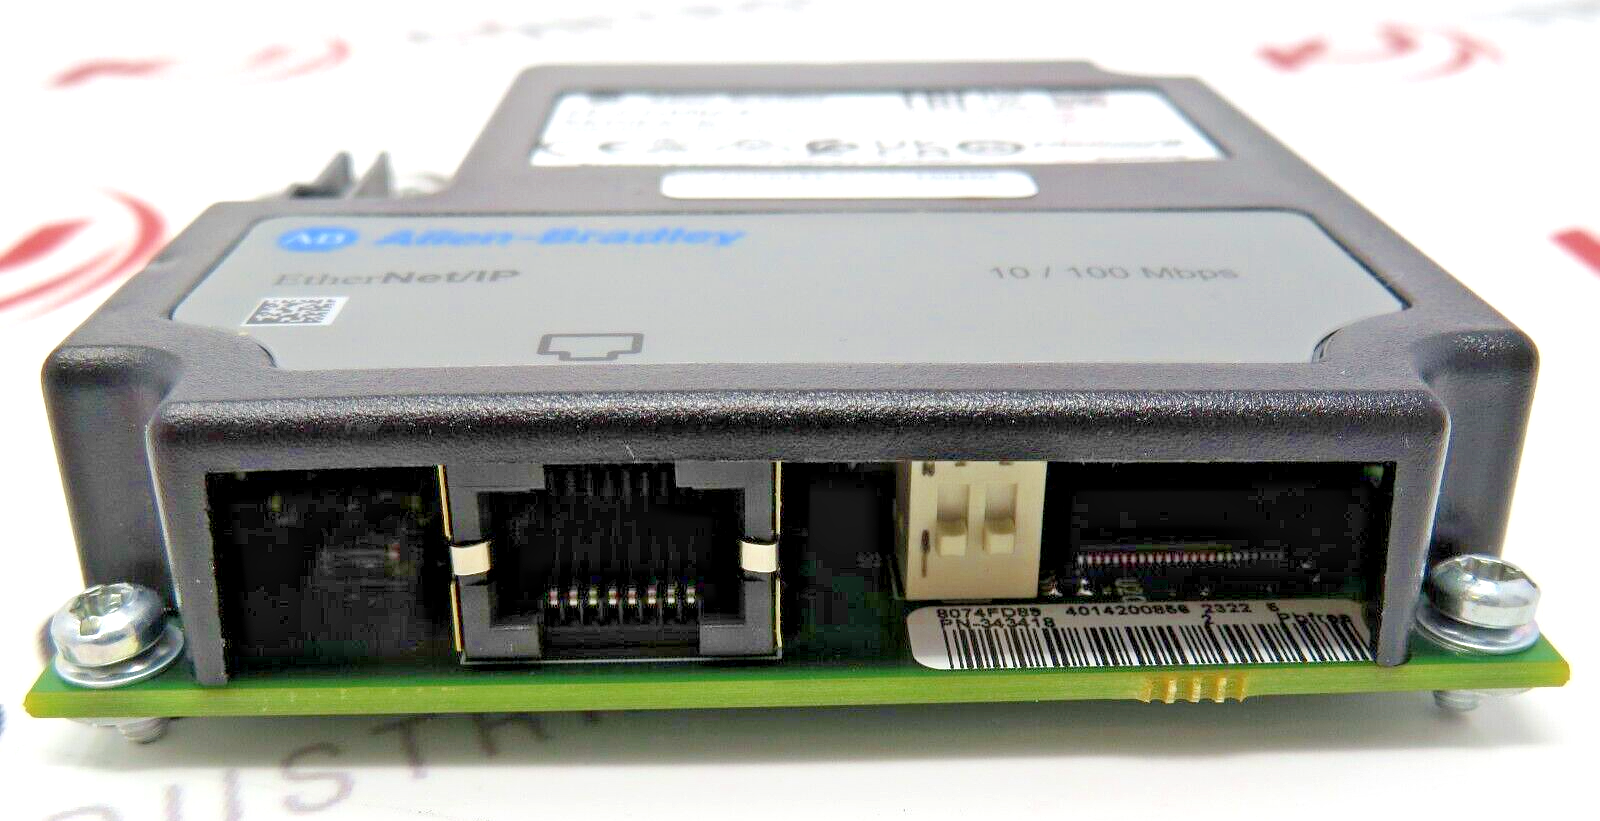 Allen-Bradley 20-COMM-E Ethernet Communication Adapter